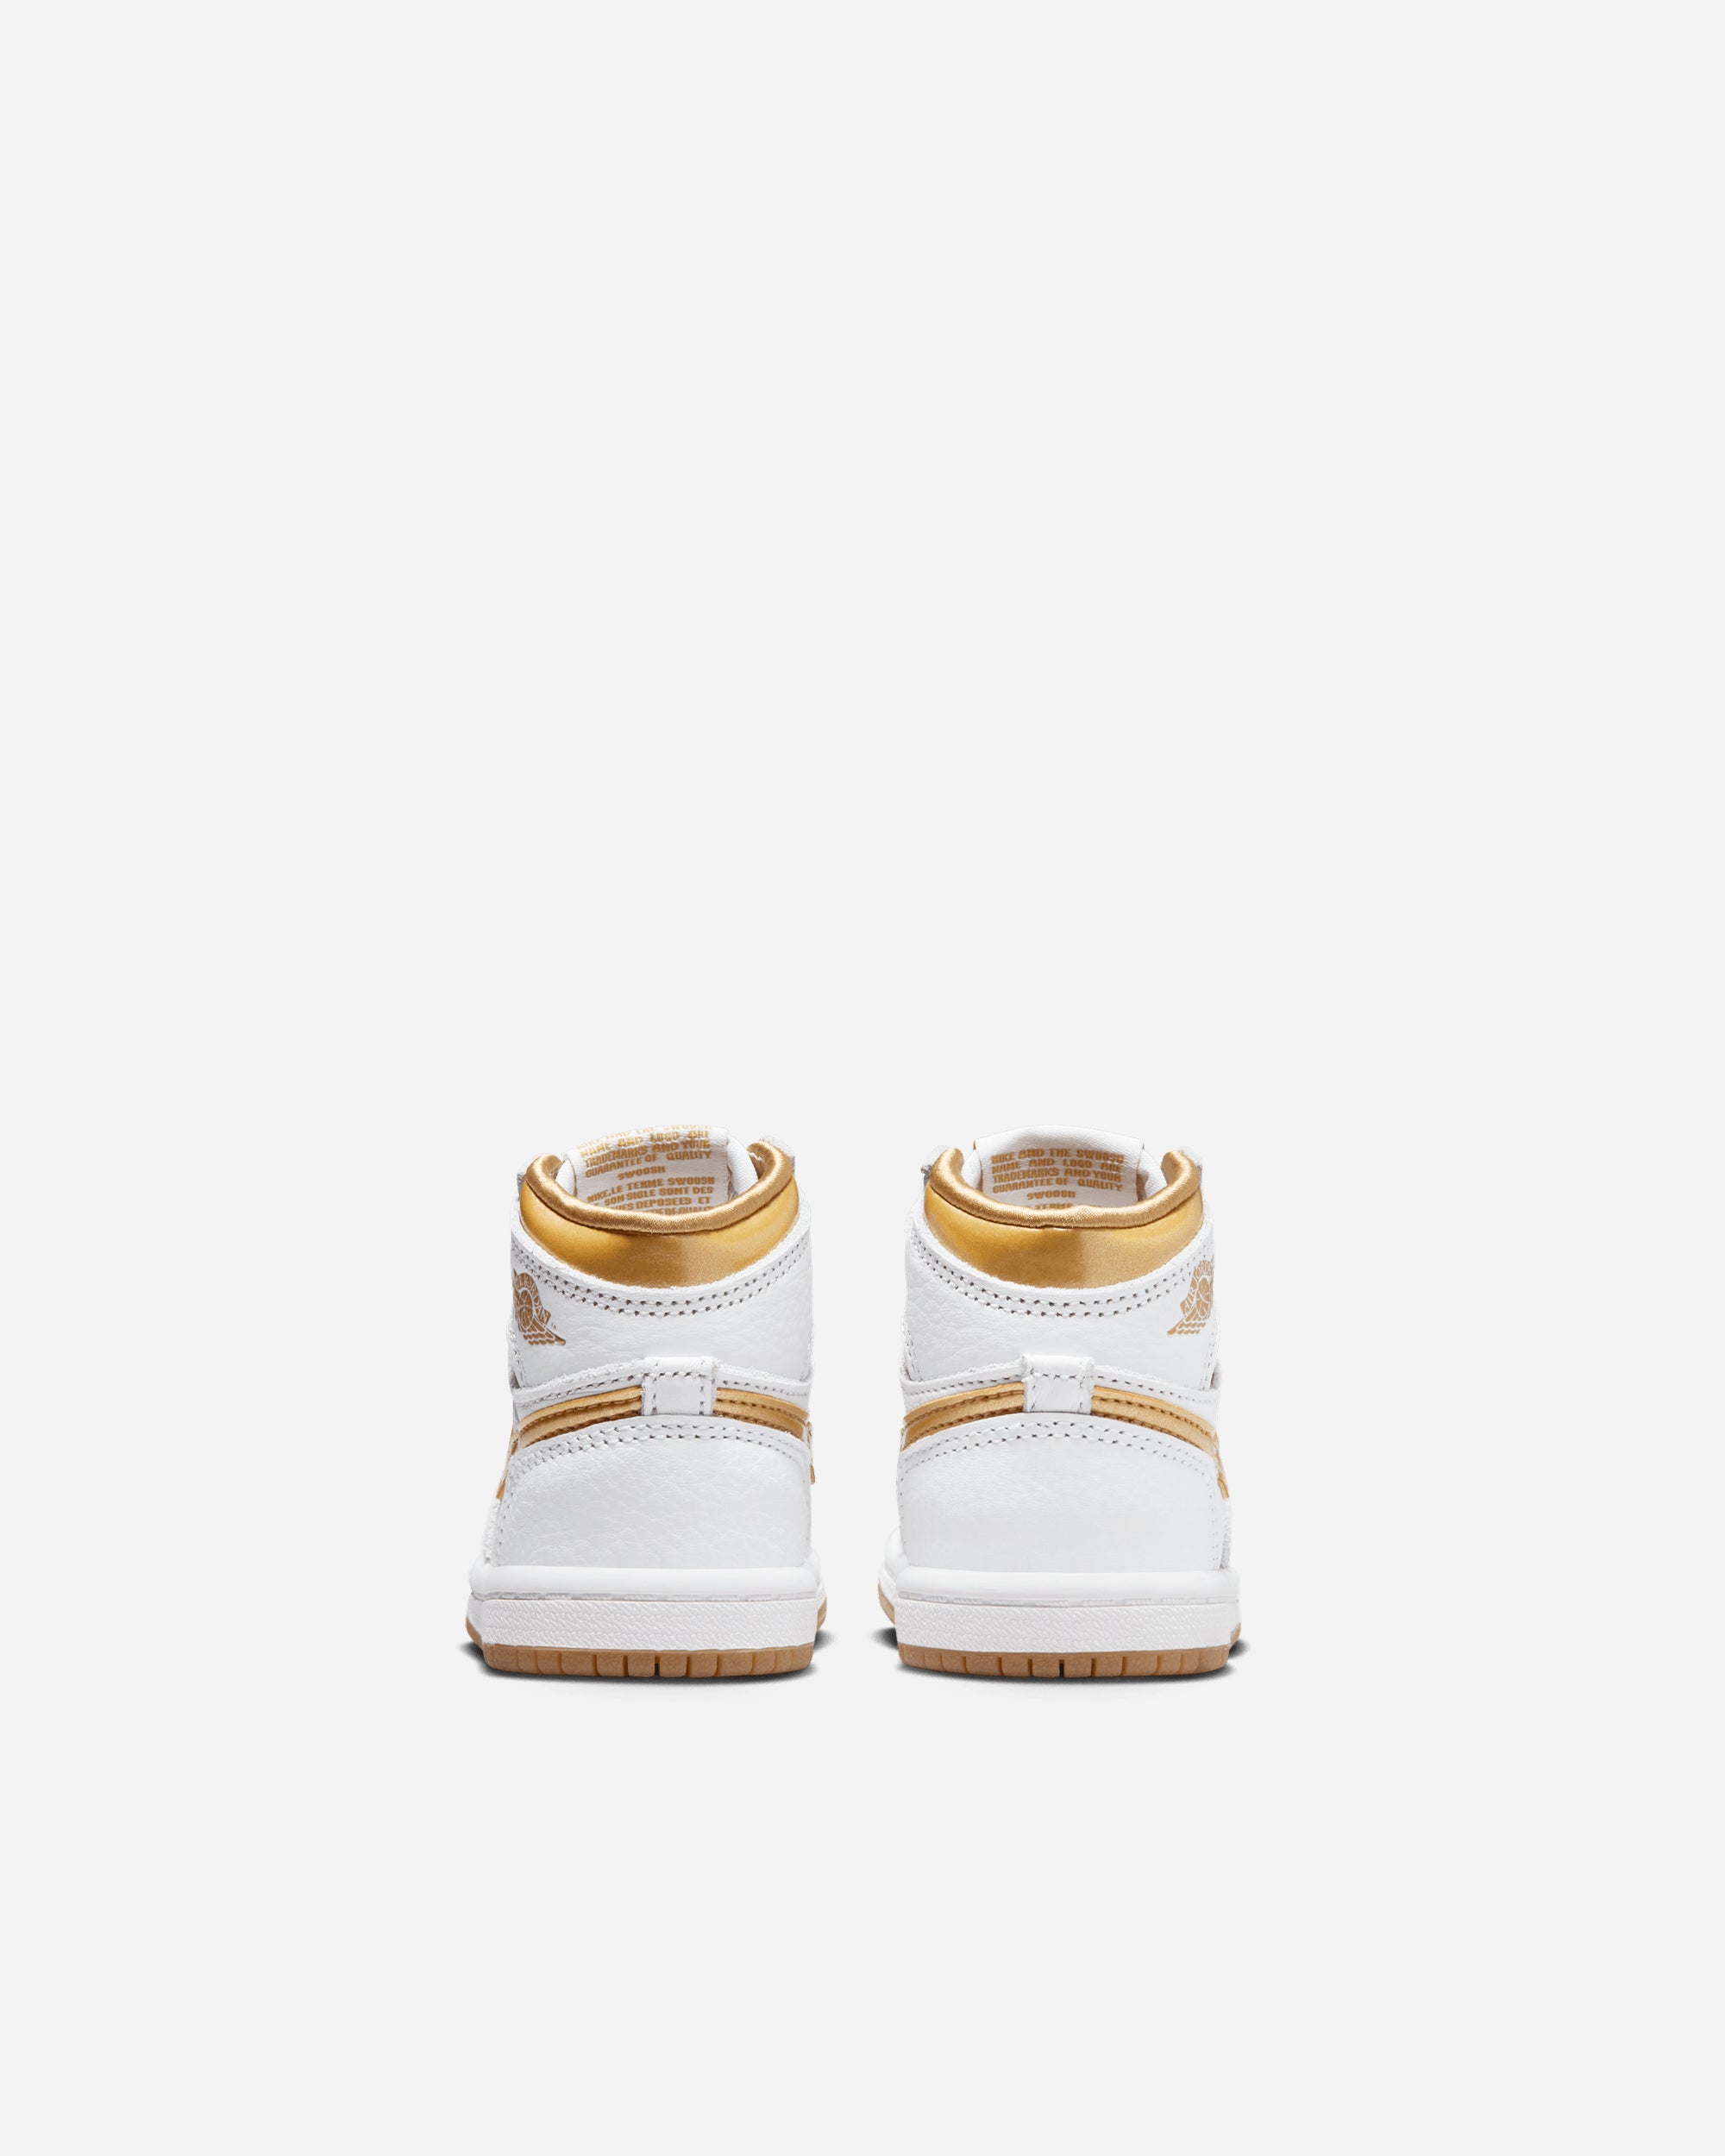 Jordan Brand Jordan 1 Retro High 'Metallic Gold' (Toddler) WHITE/METALLIC GOLD FD2598-107